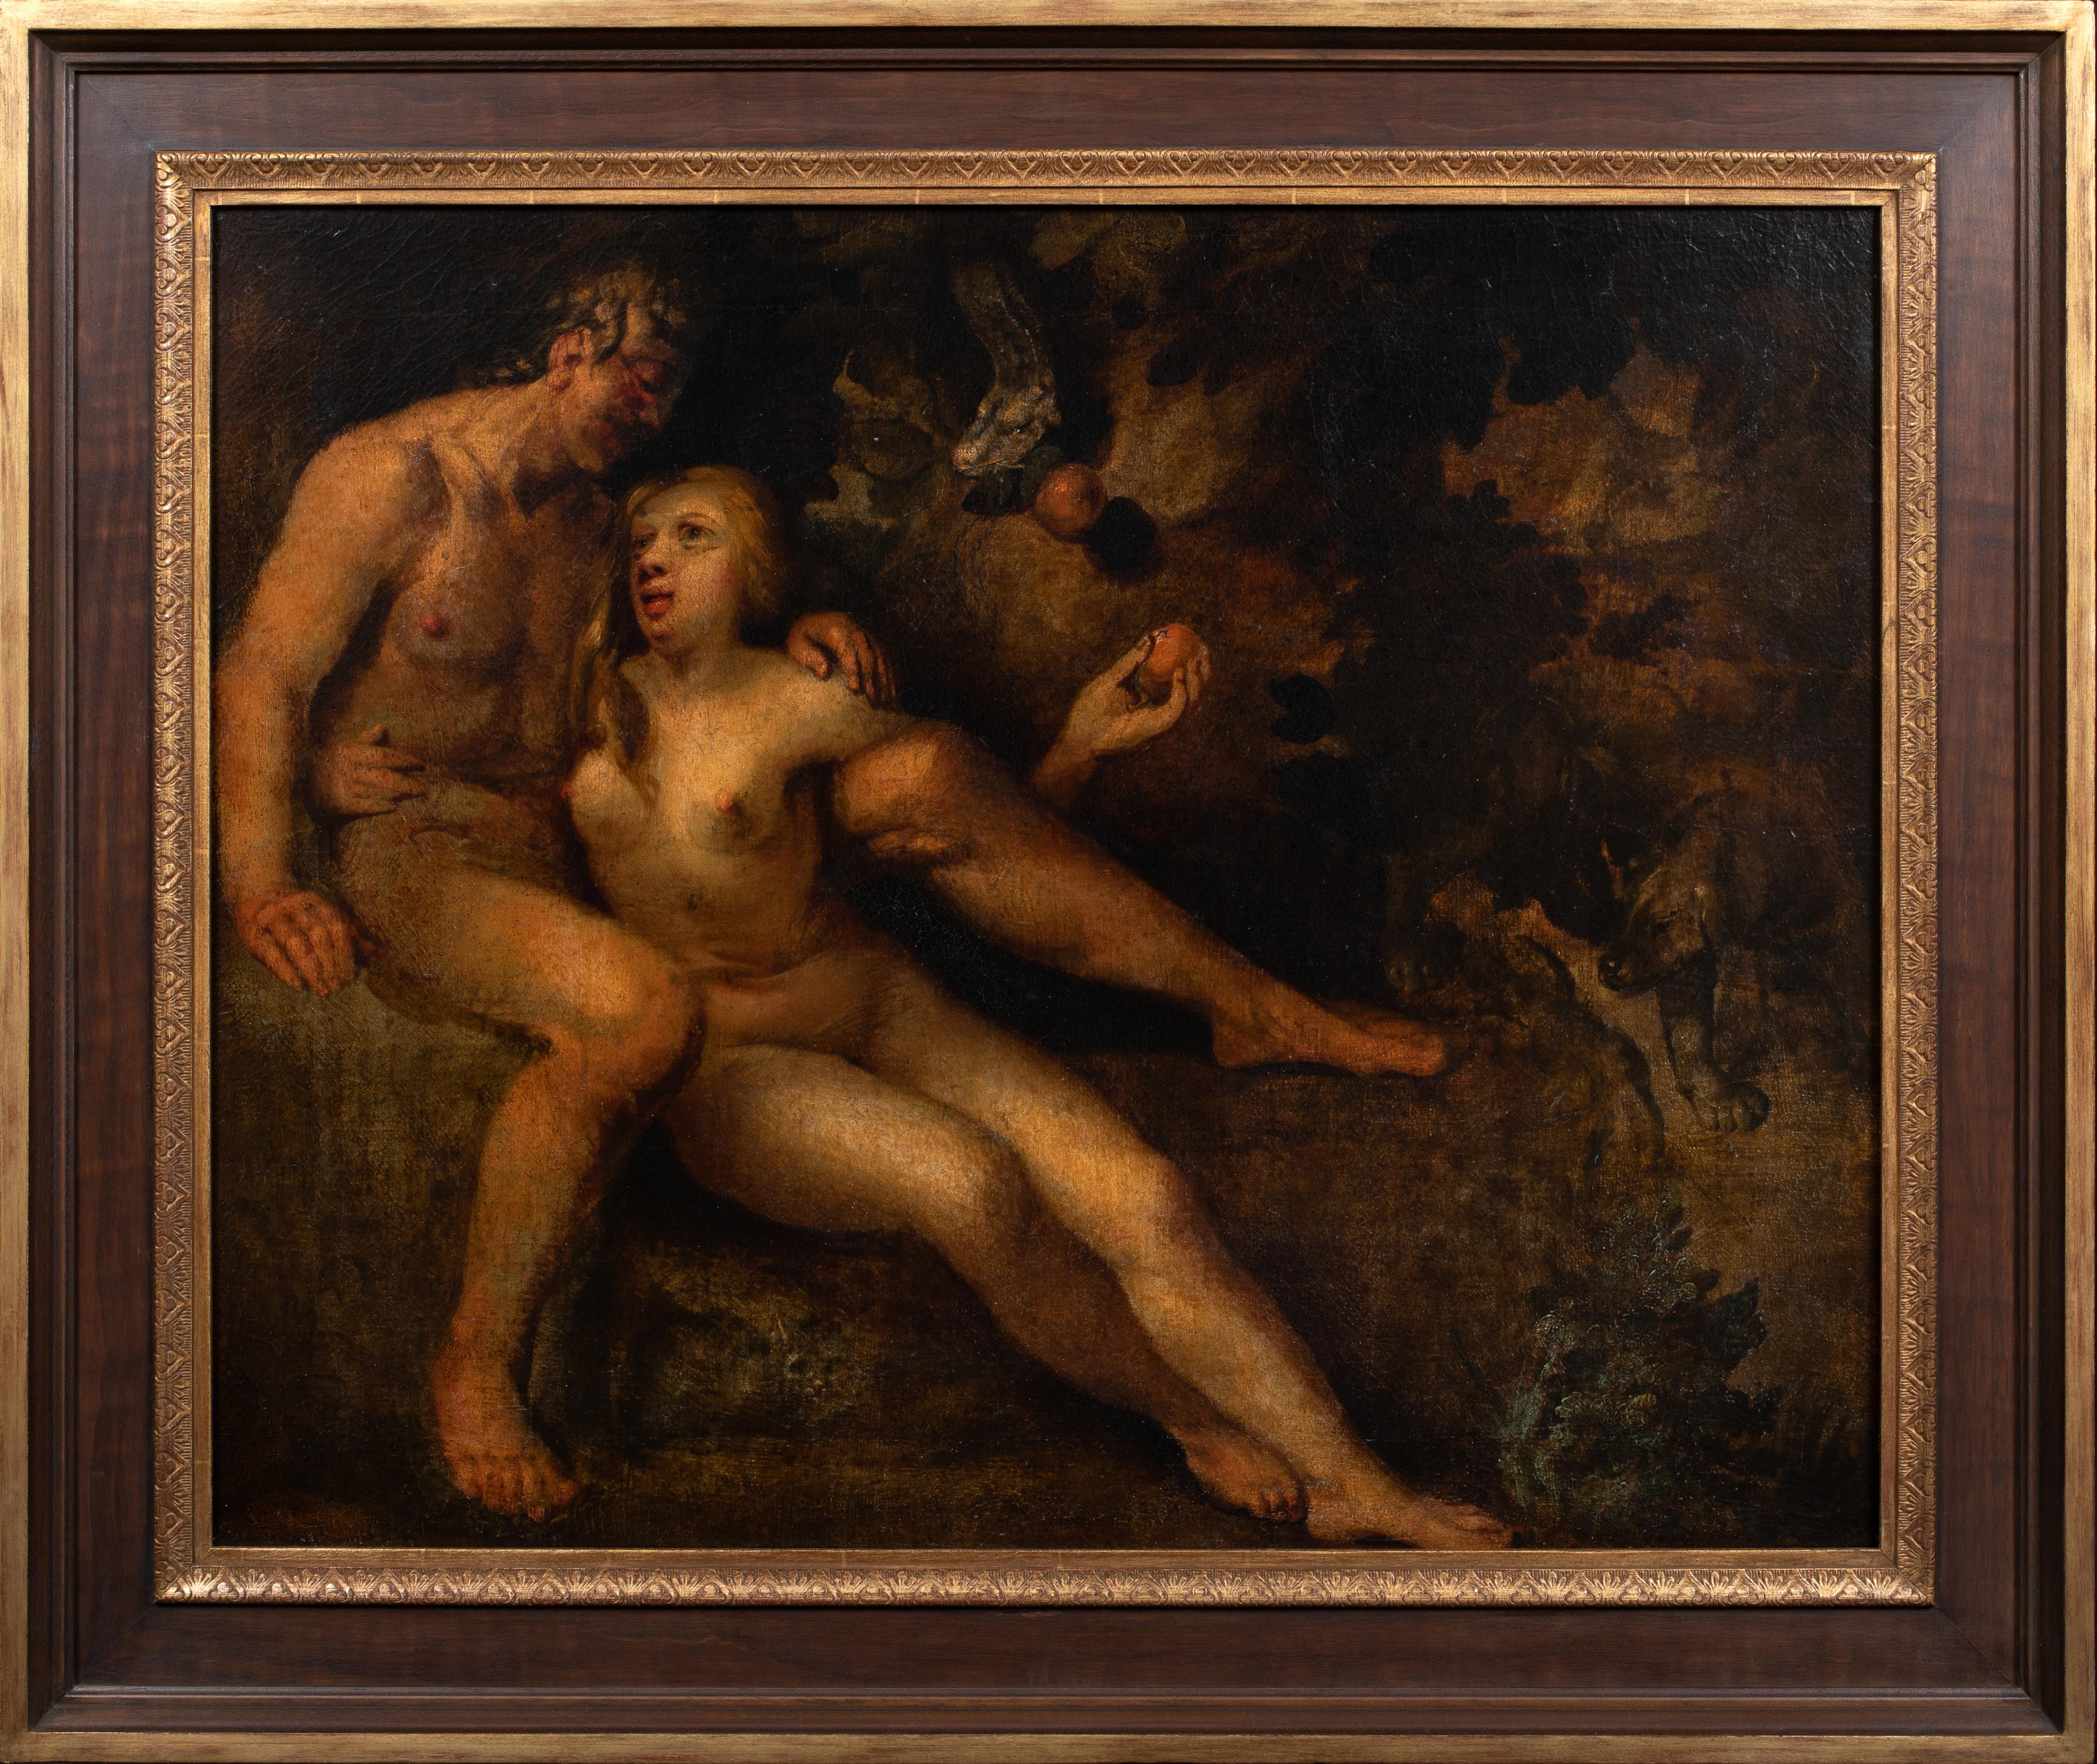 Portrait Painting Unknown - Adam et Eve dans le jardin d'Eden, école flamande du XVIe siècle